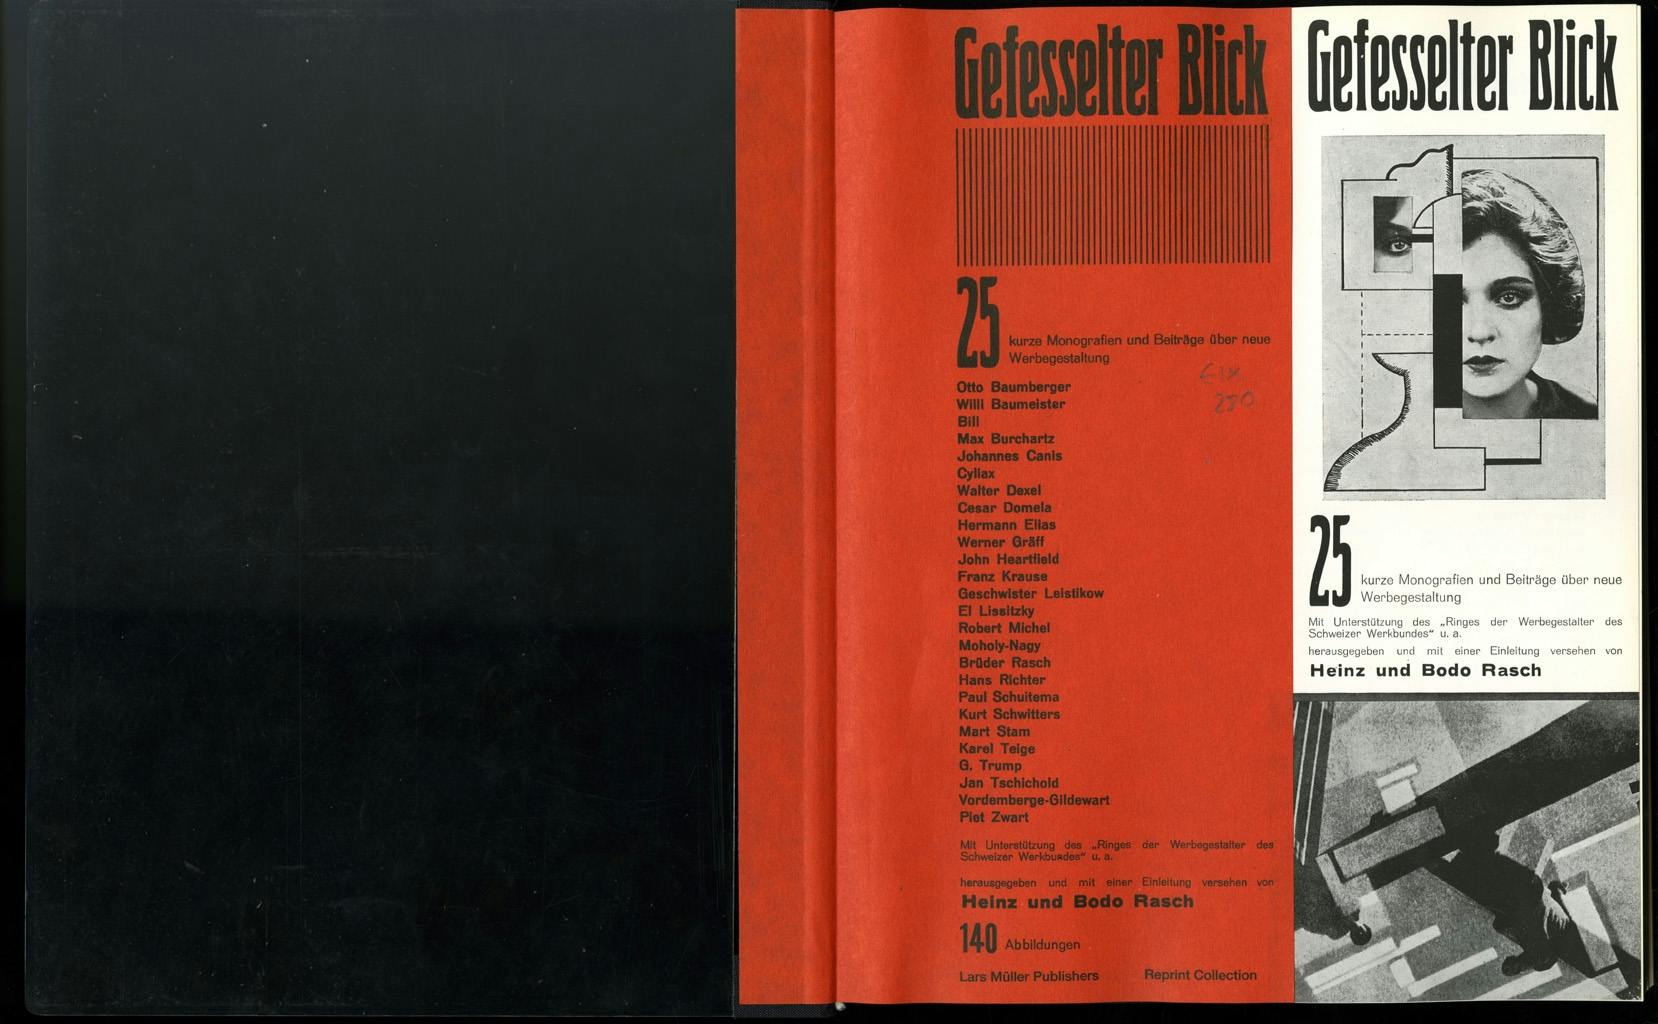 Gefesselter Blick: capturing the eye, 1930